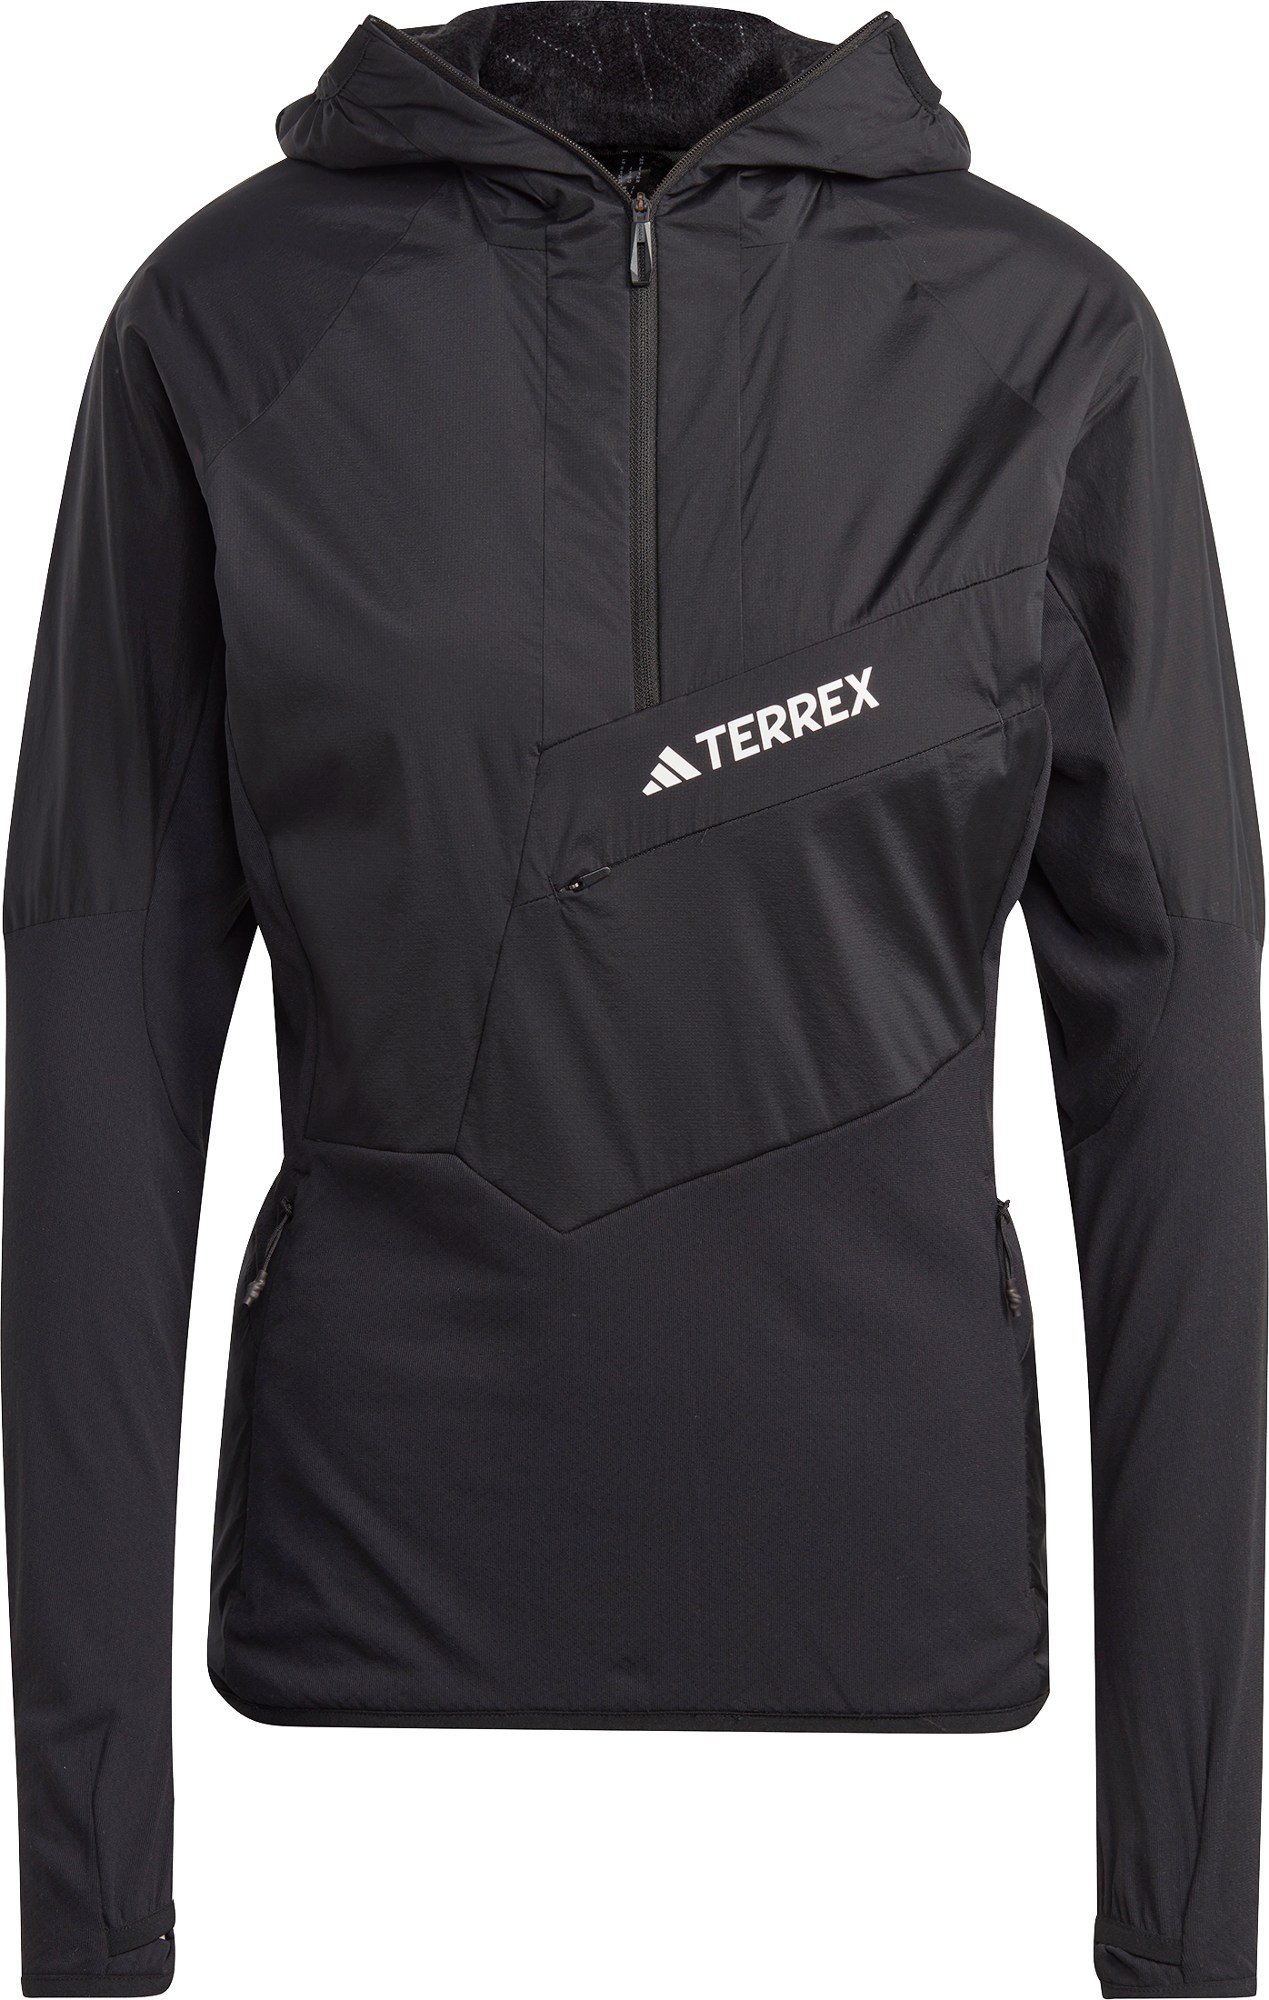 Сверхлегкая флисовая куртка Techrock с капюшоном и полумолнией - женская adidas, черный